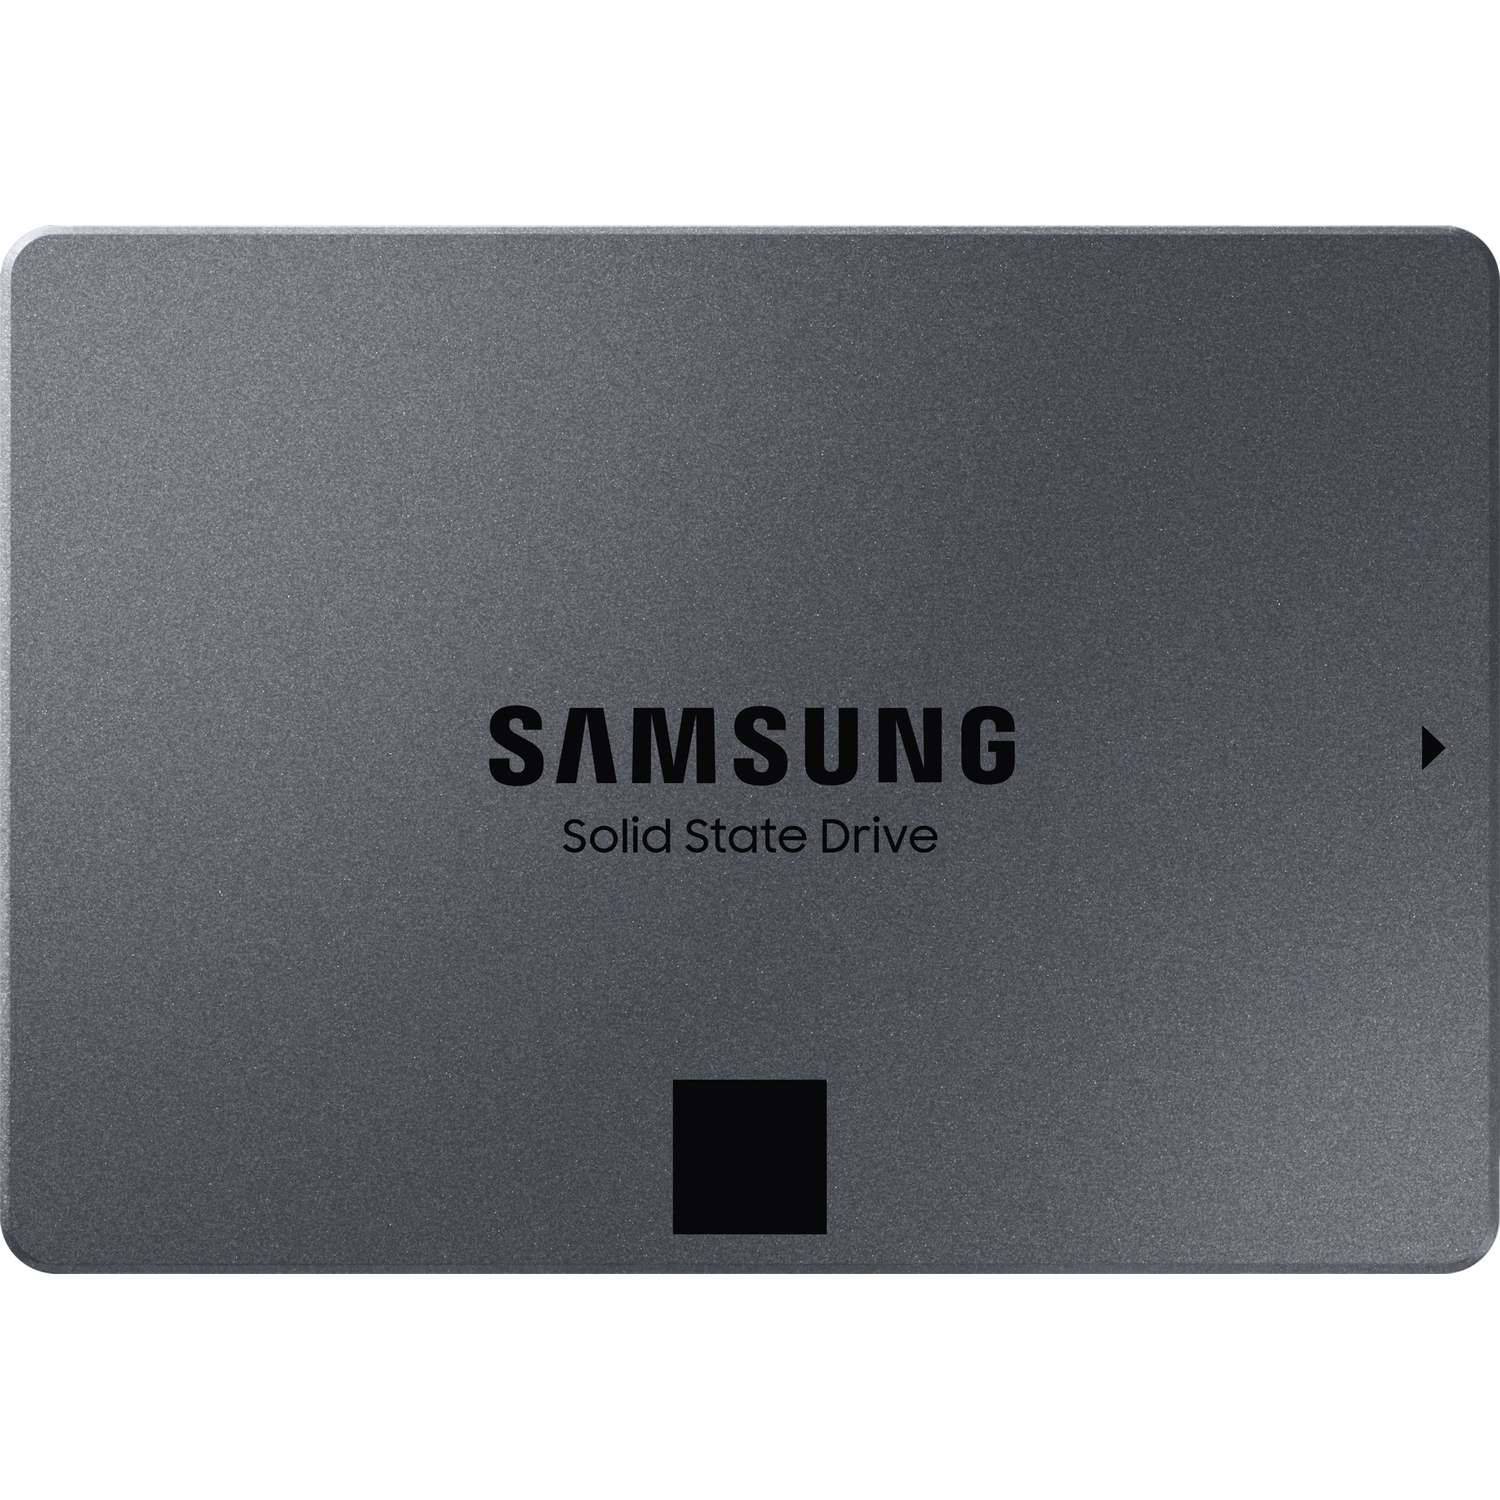 Samsung evo 1tb купить. Samsung SSD 870 QVO 1tb MZ-77q1t0bw. Samsung MZ-77q2t0bw. SSD Samsung 1tb SATA 870 QVO. 8000 ГБ 2.5" SATA накопитель Samsung 870 QVO.